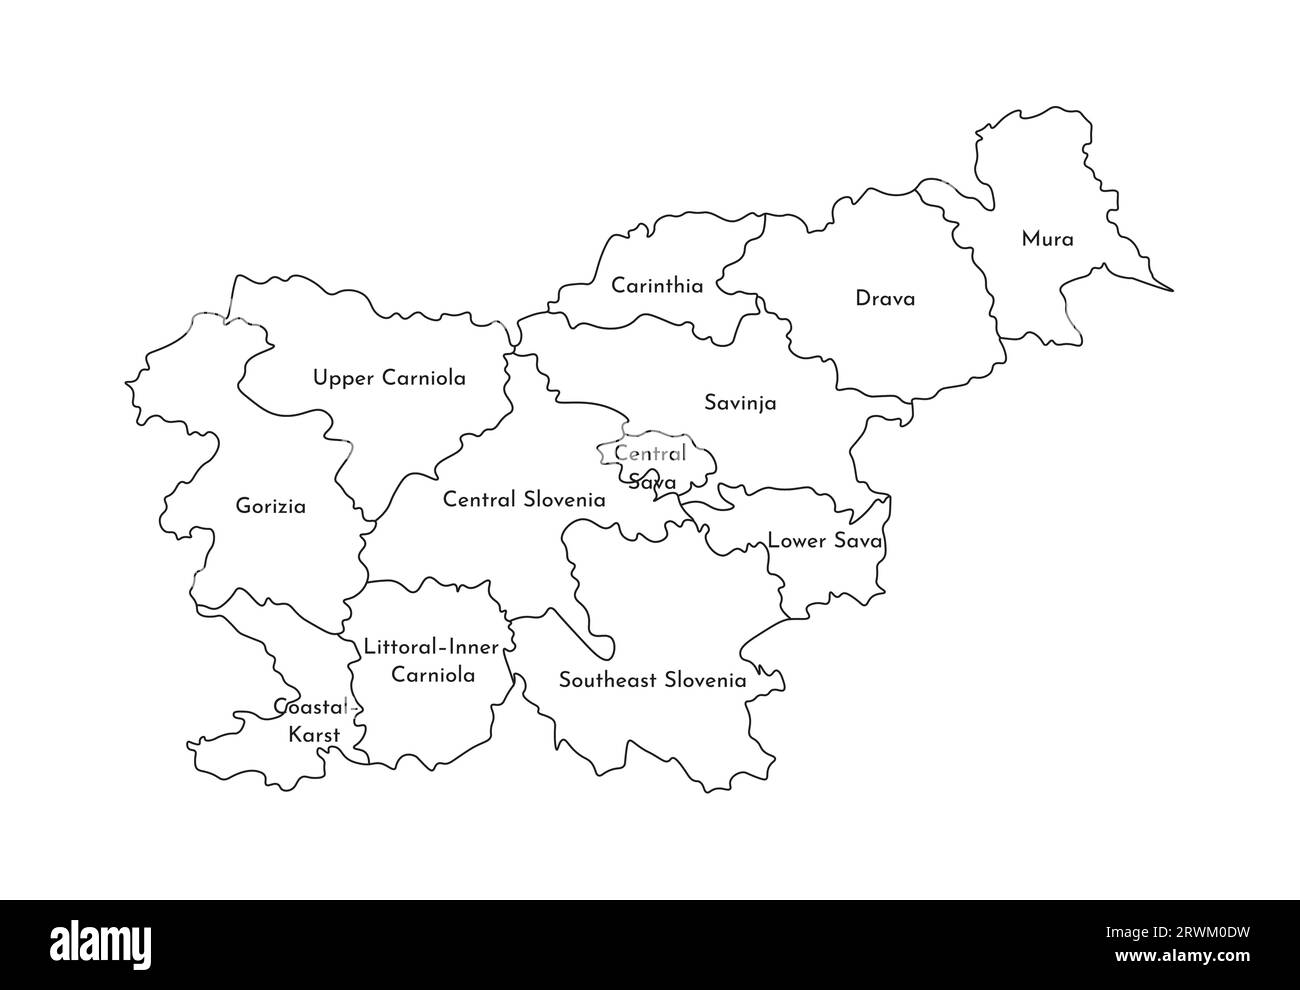 Vektorisolierte Darstellung der vereinfachten Verwaltungskarte Sloweniens. Grenzen und Namen der Regionen. Silhouetten mit schwarzen Linien. Stock Vektor